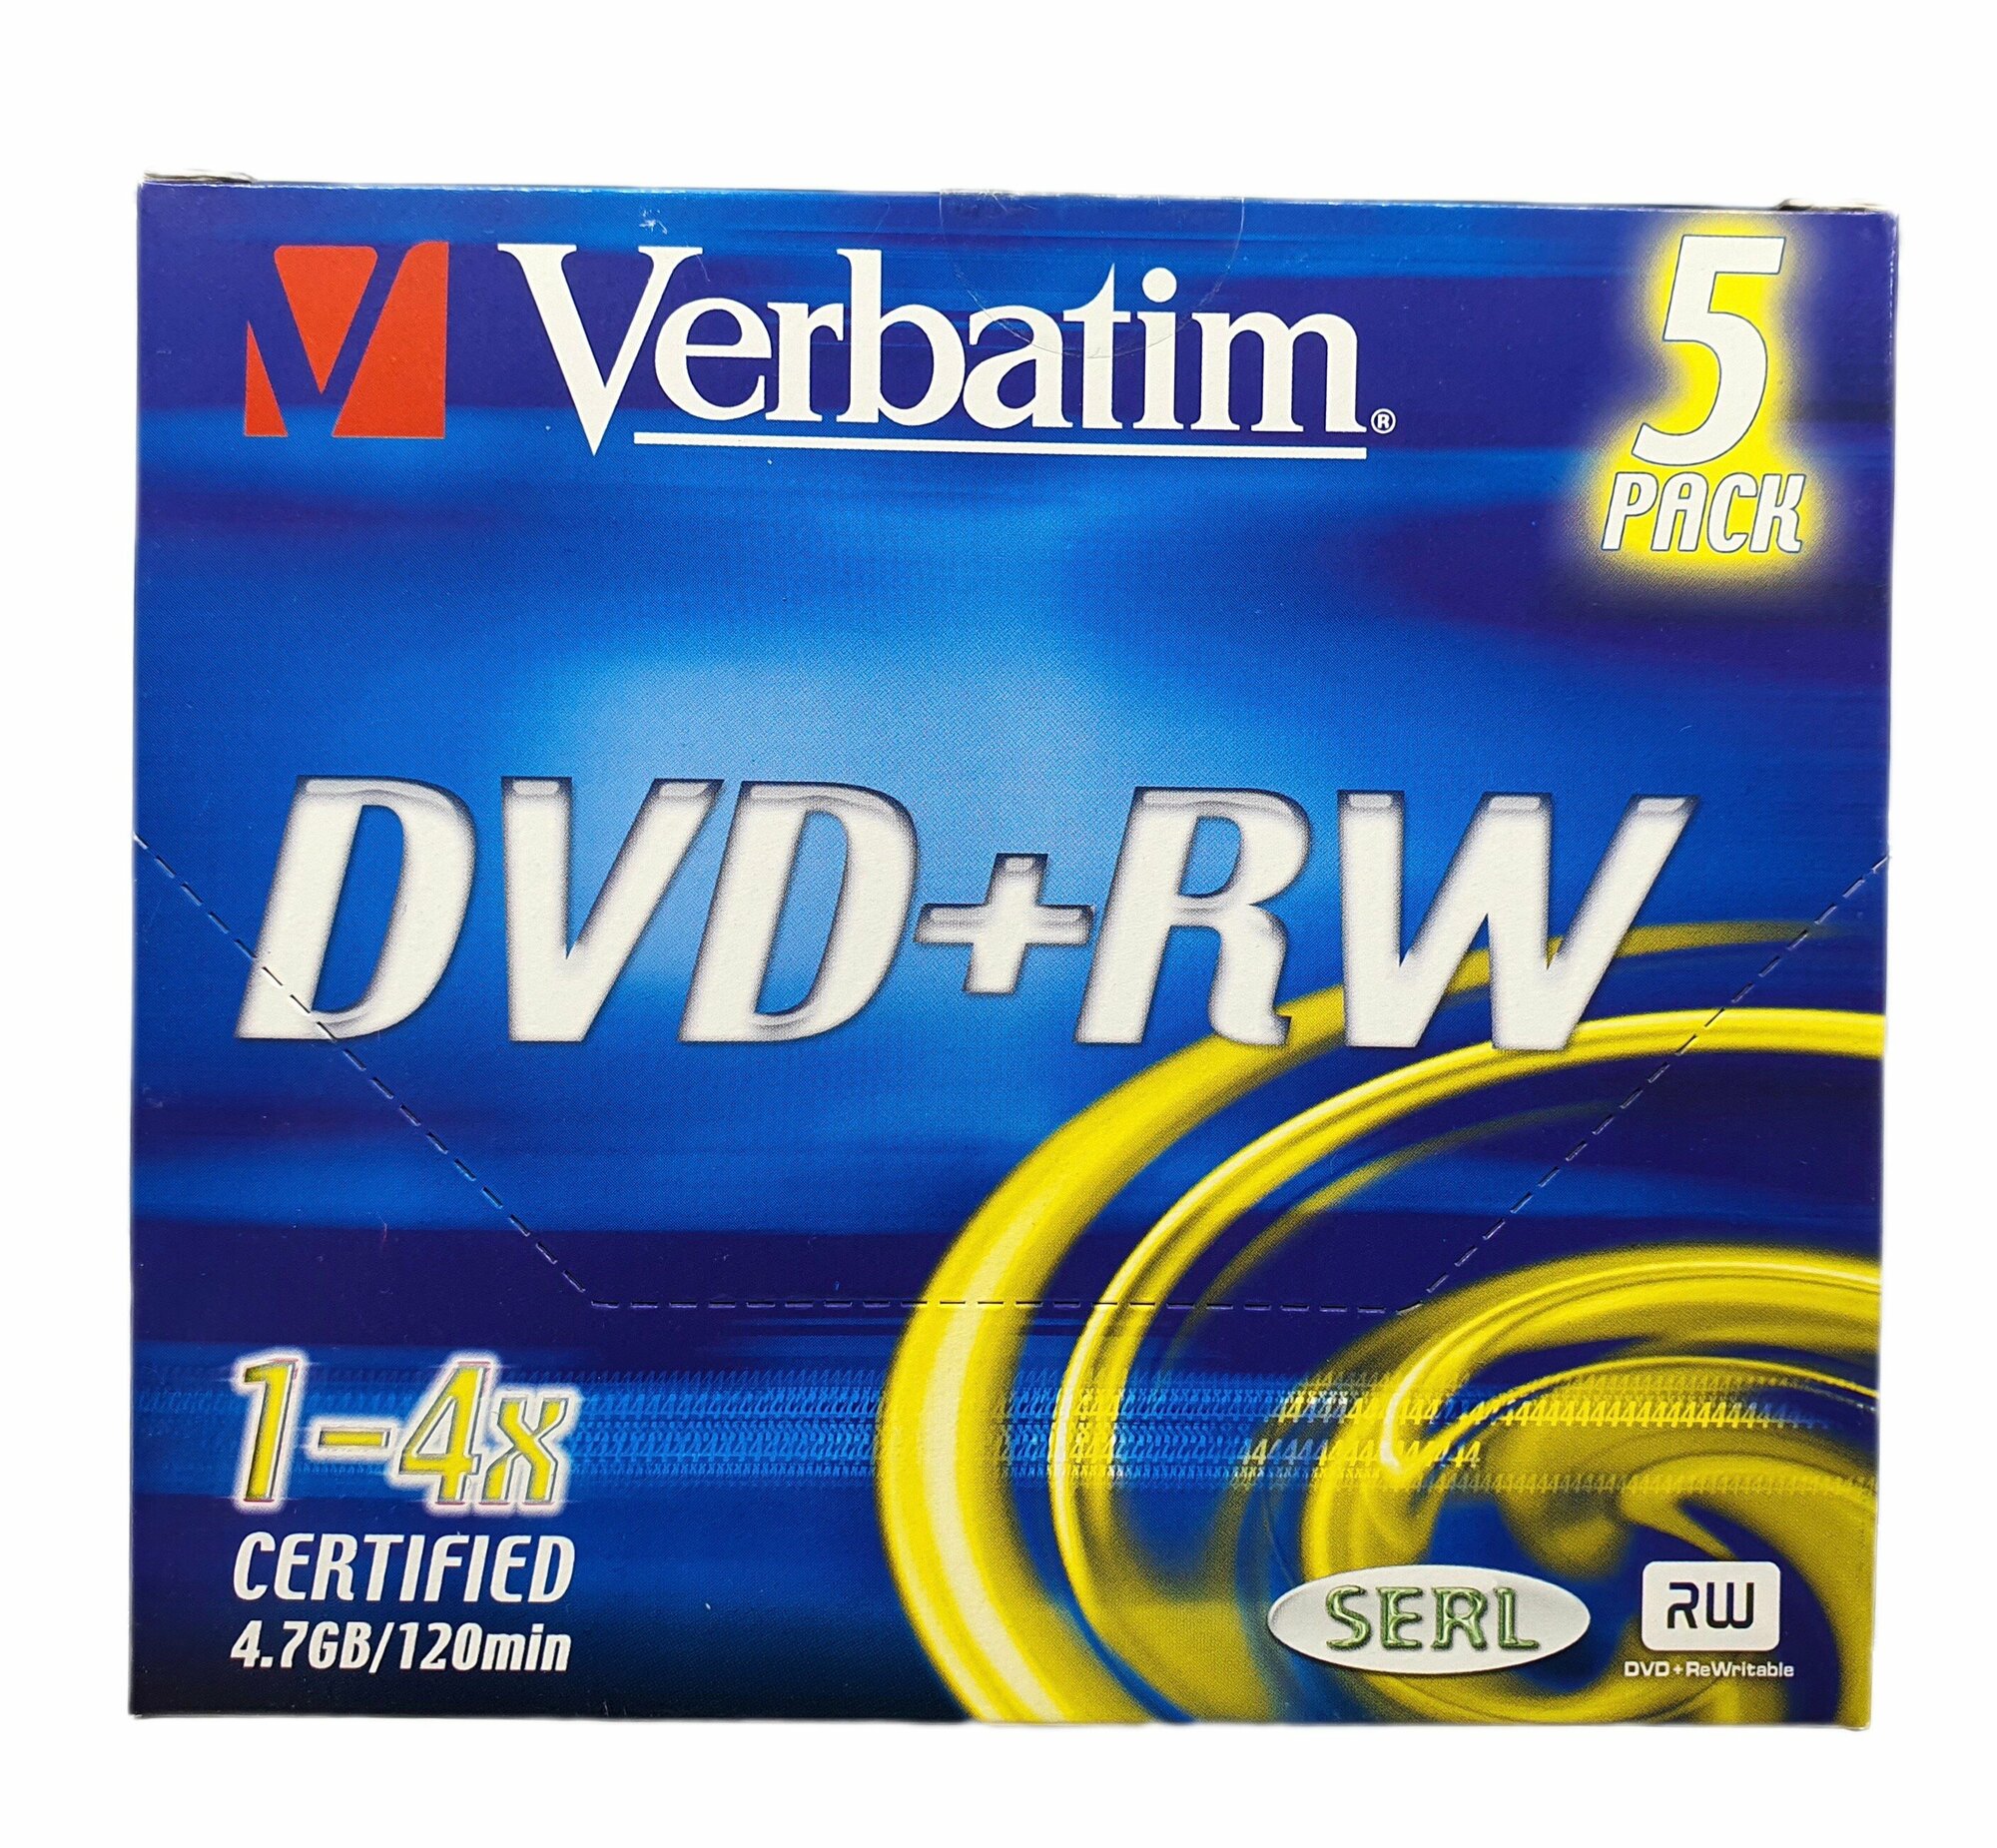 Компакт диск для записи Verbatim DVD+RW 4.7gb, 1-4x, 120min (упаковка из 5 штук)